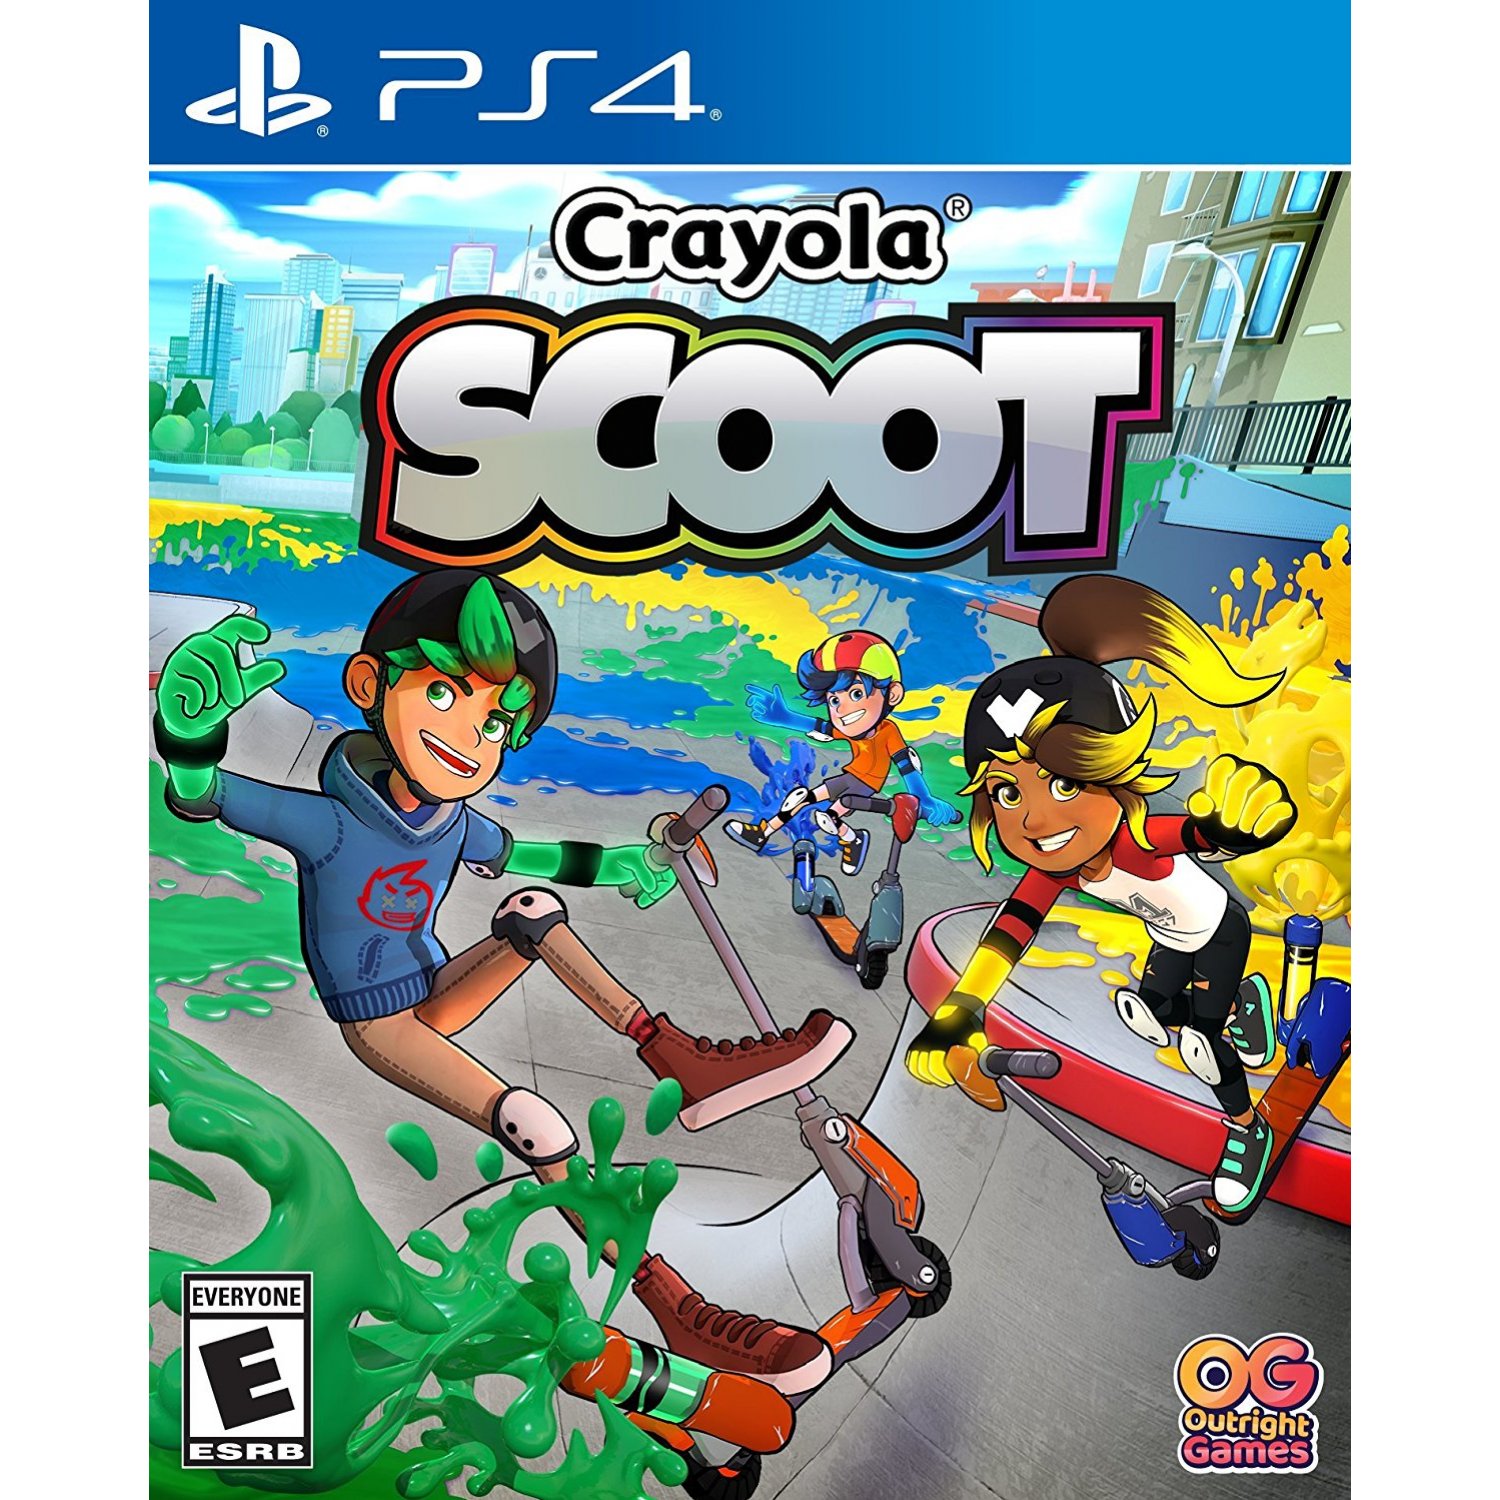 Crayola Scoot [PS4, английская версия]